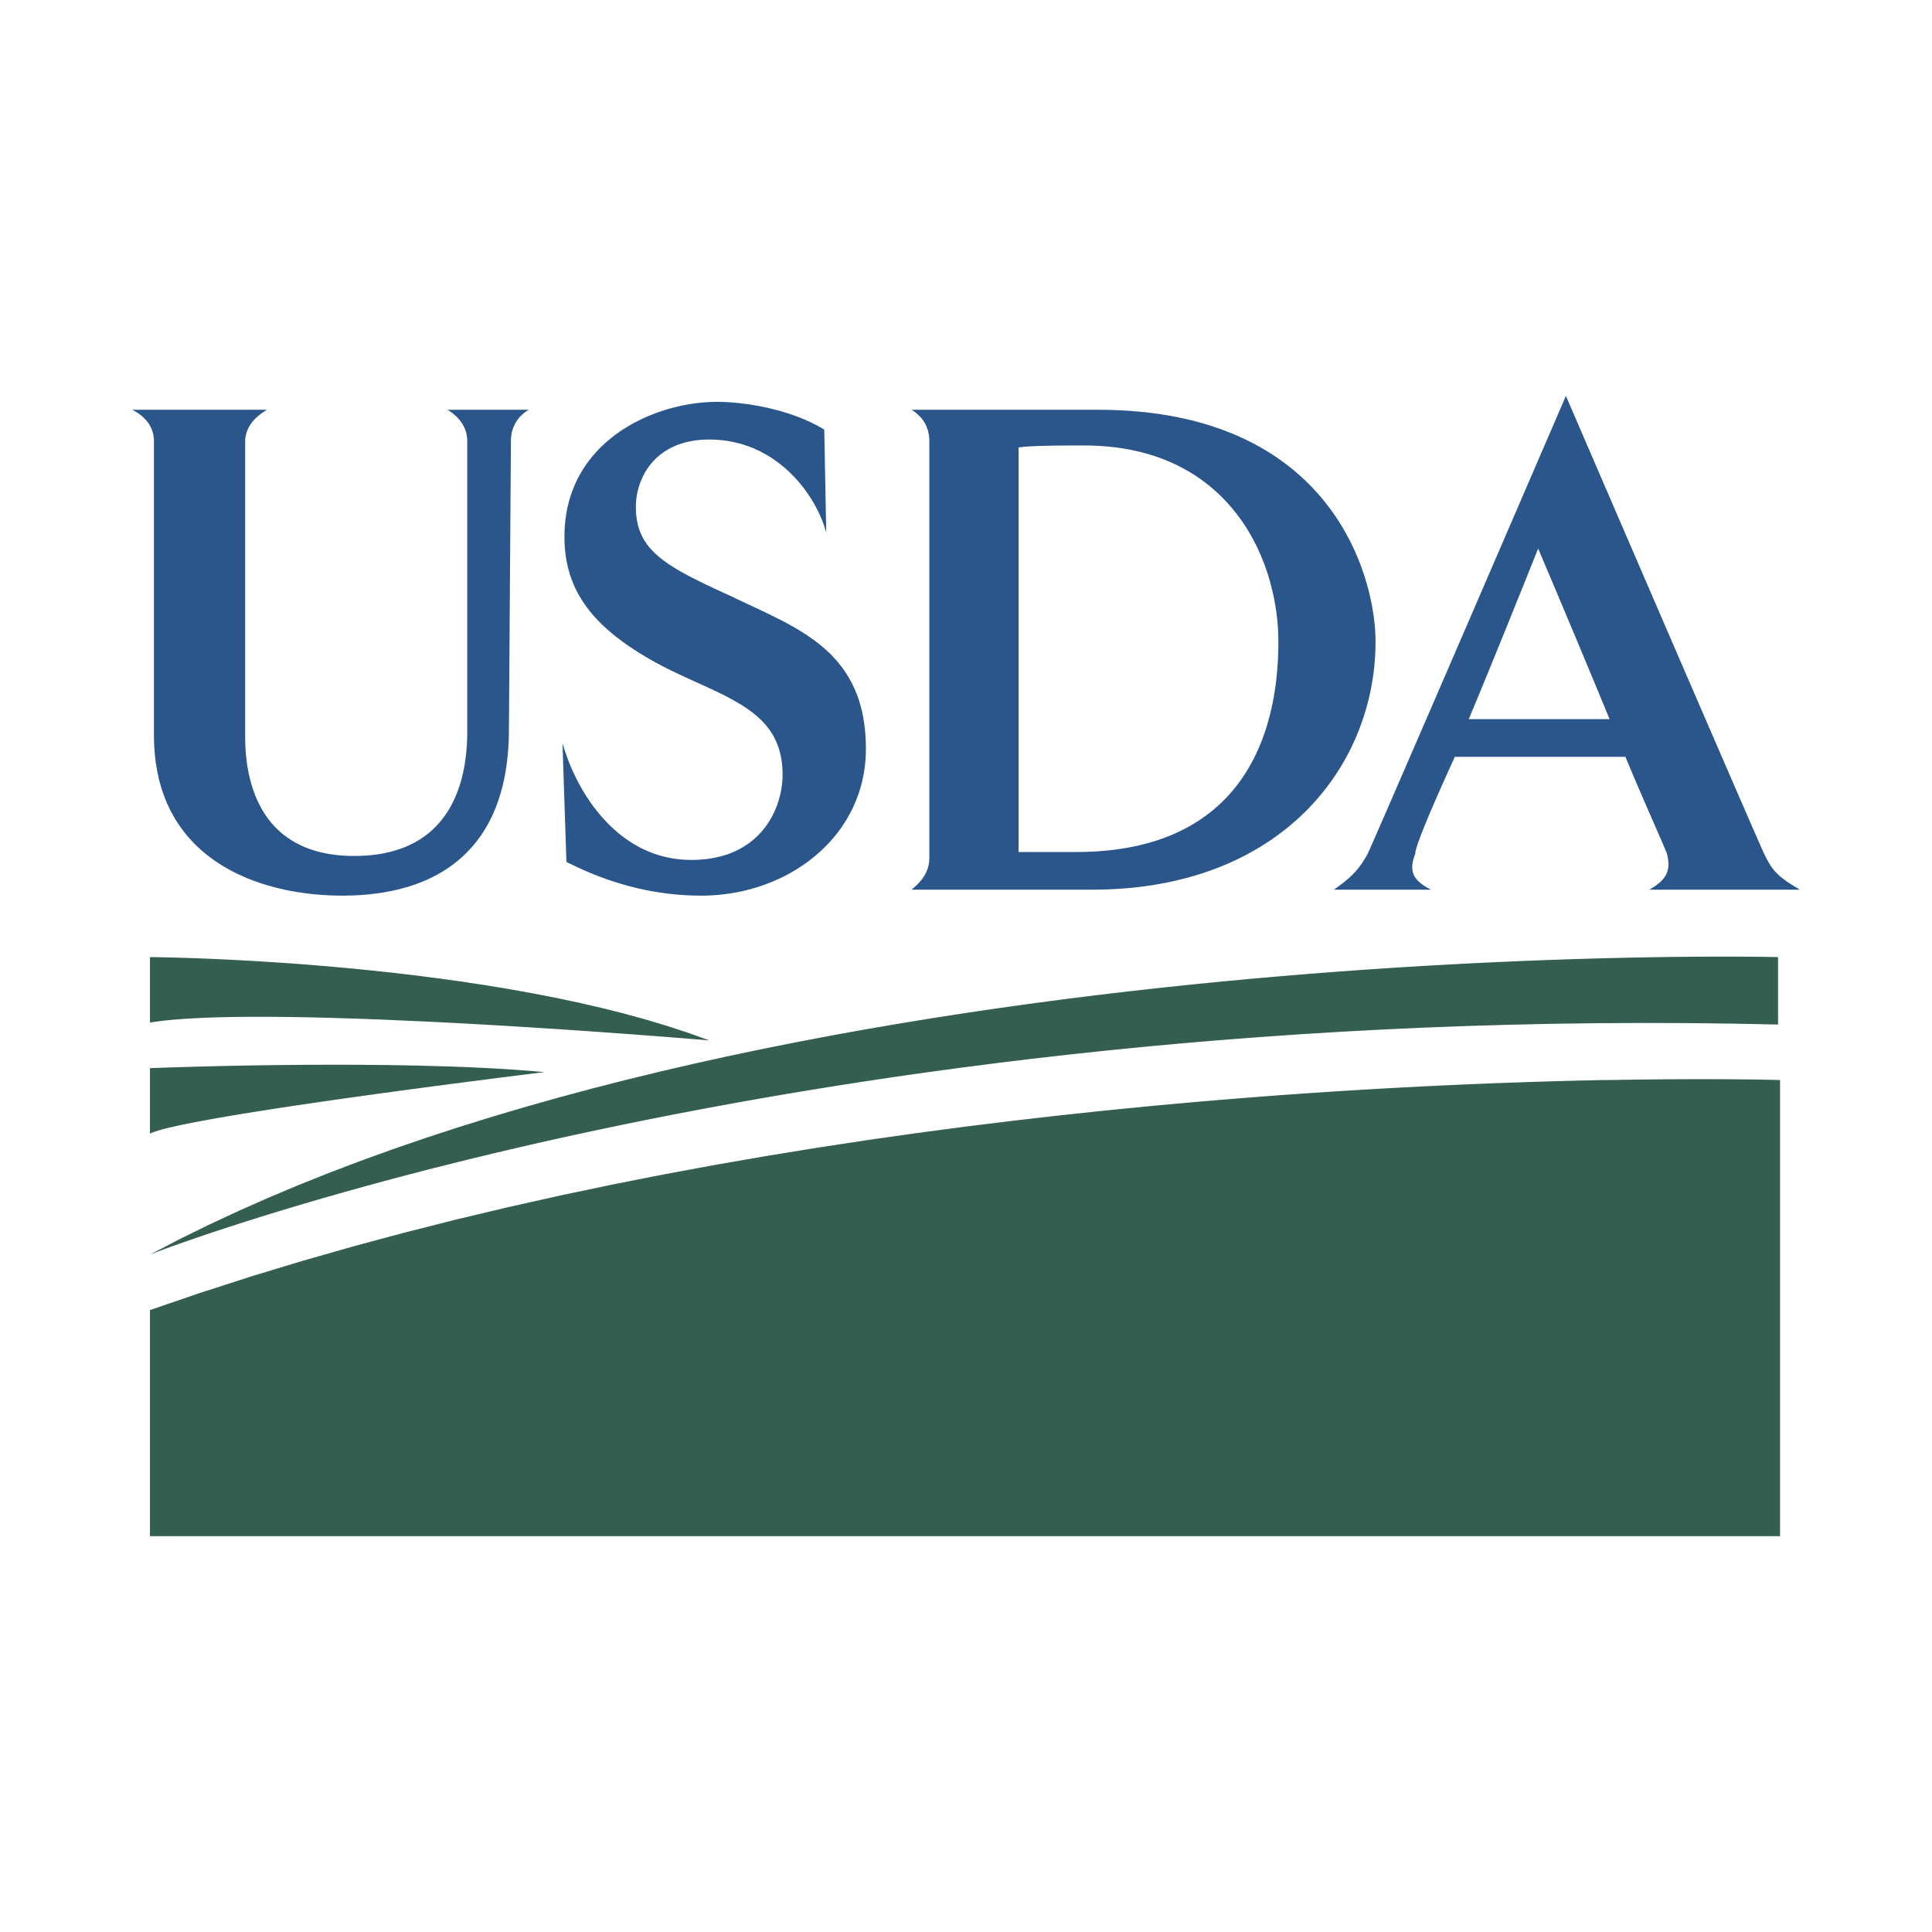 USDA Issues Public Health Alert for HelloFresh Ground Beef 